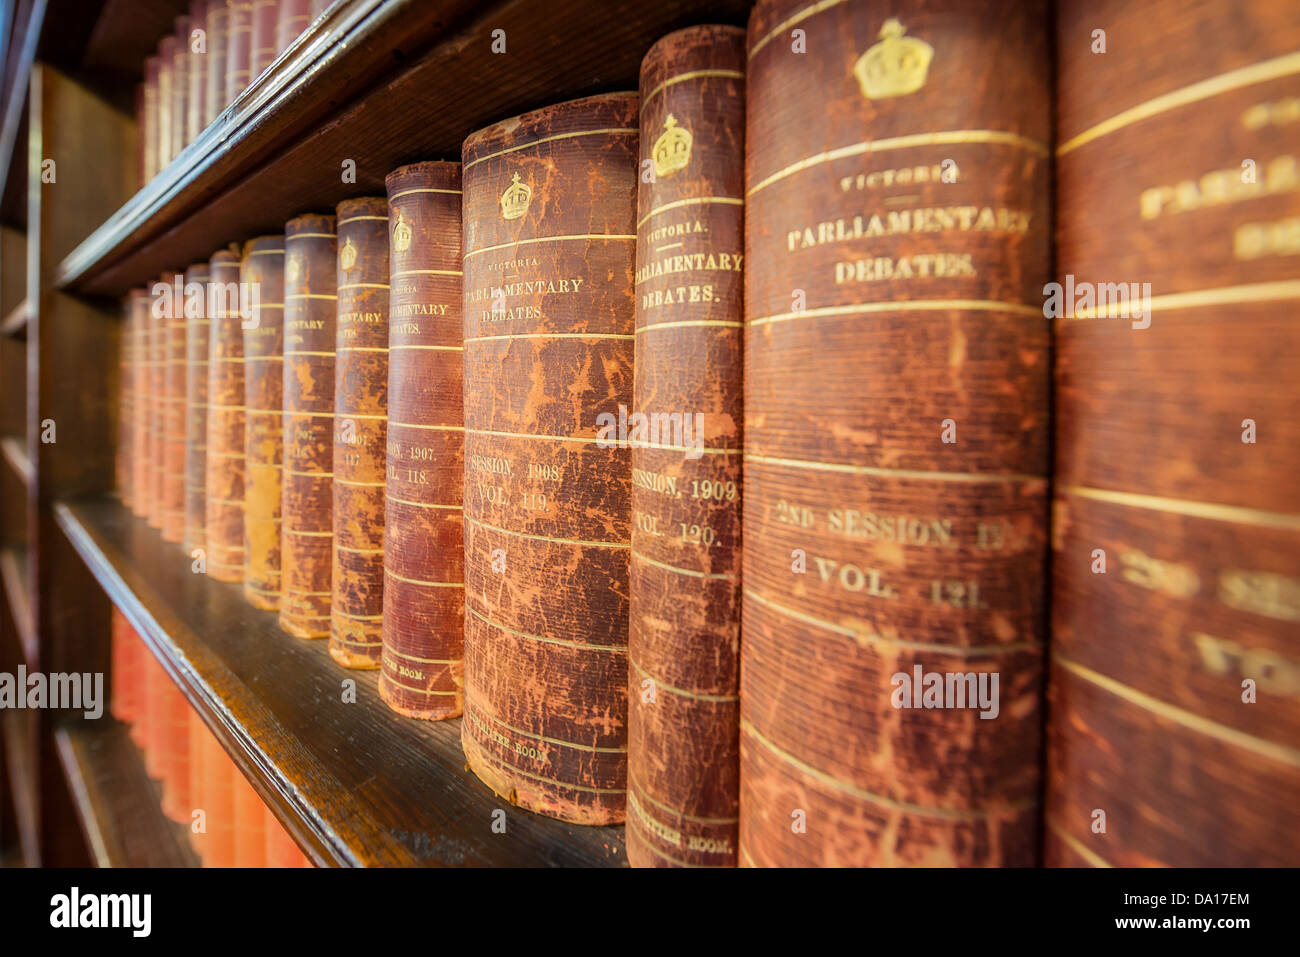 Alcuni pesanti lettura tra libri sugli scaffali del Parlamento di Victoria in Australia. Foto Stock